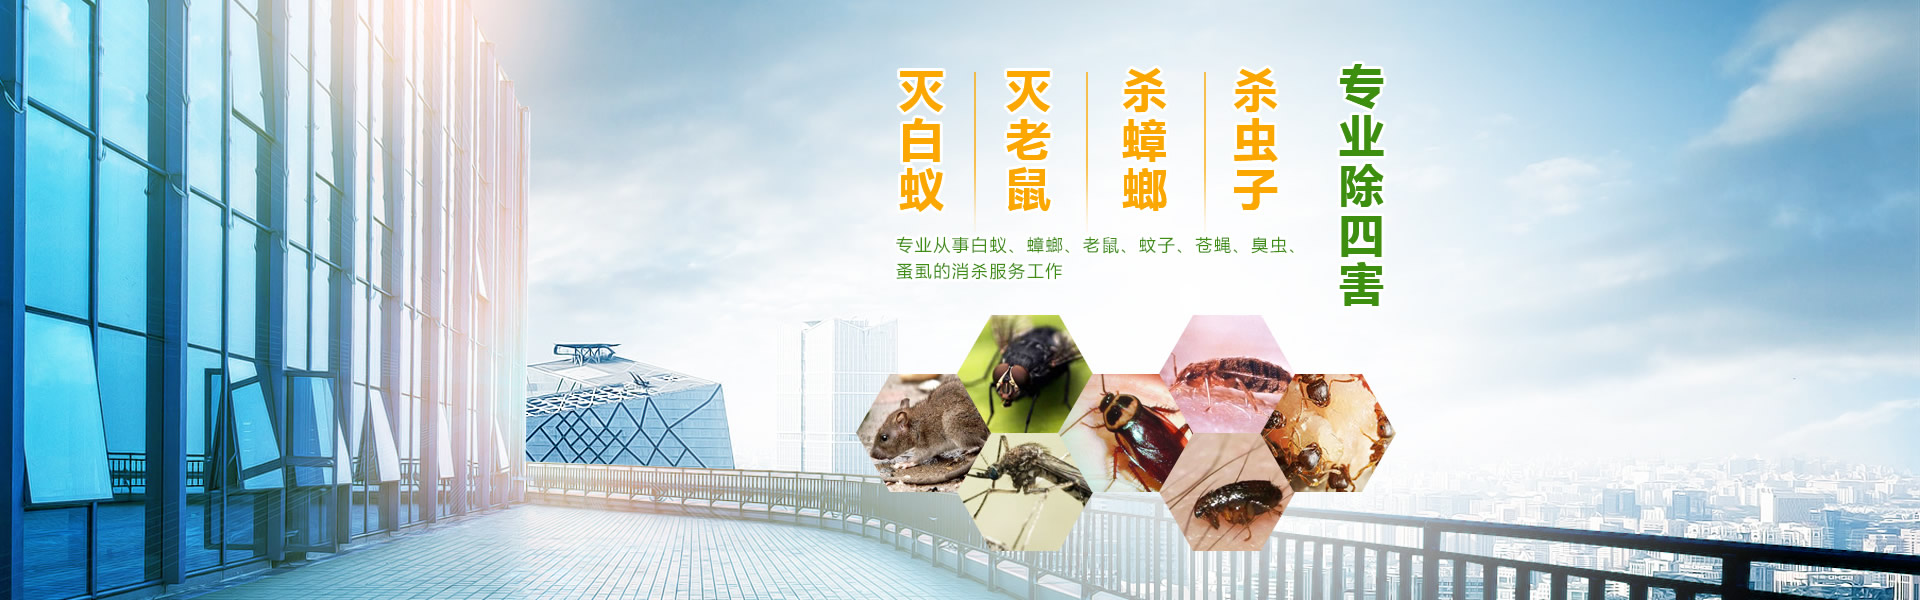 广州博克昆虫鼠害防治有限公司